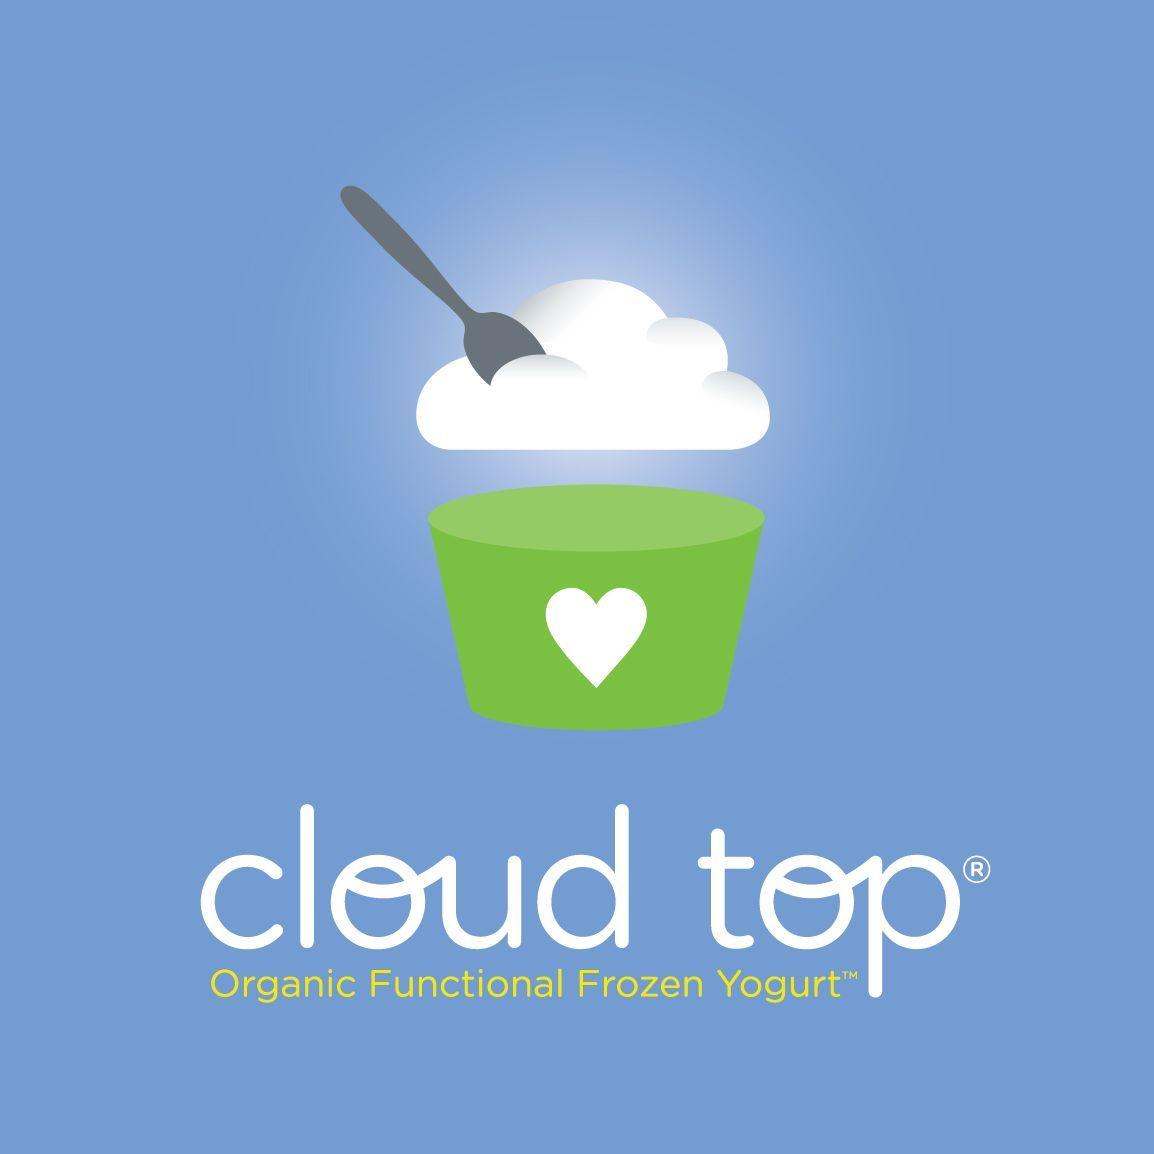 Yogurt Company Logo - Frozen Yogurt Logos Cloud top company logo | Frozen Yogurt